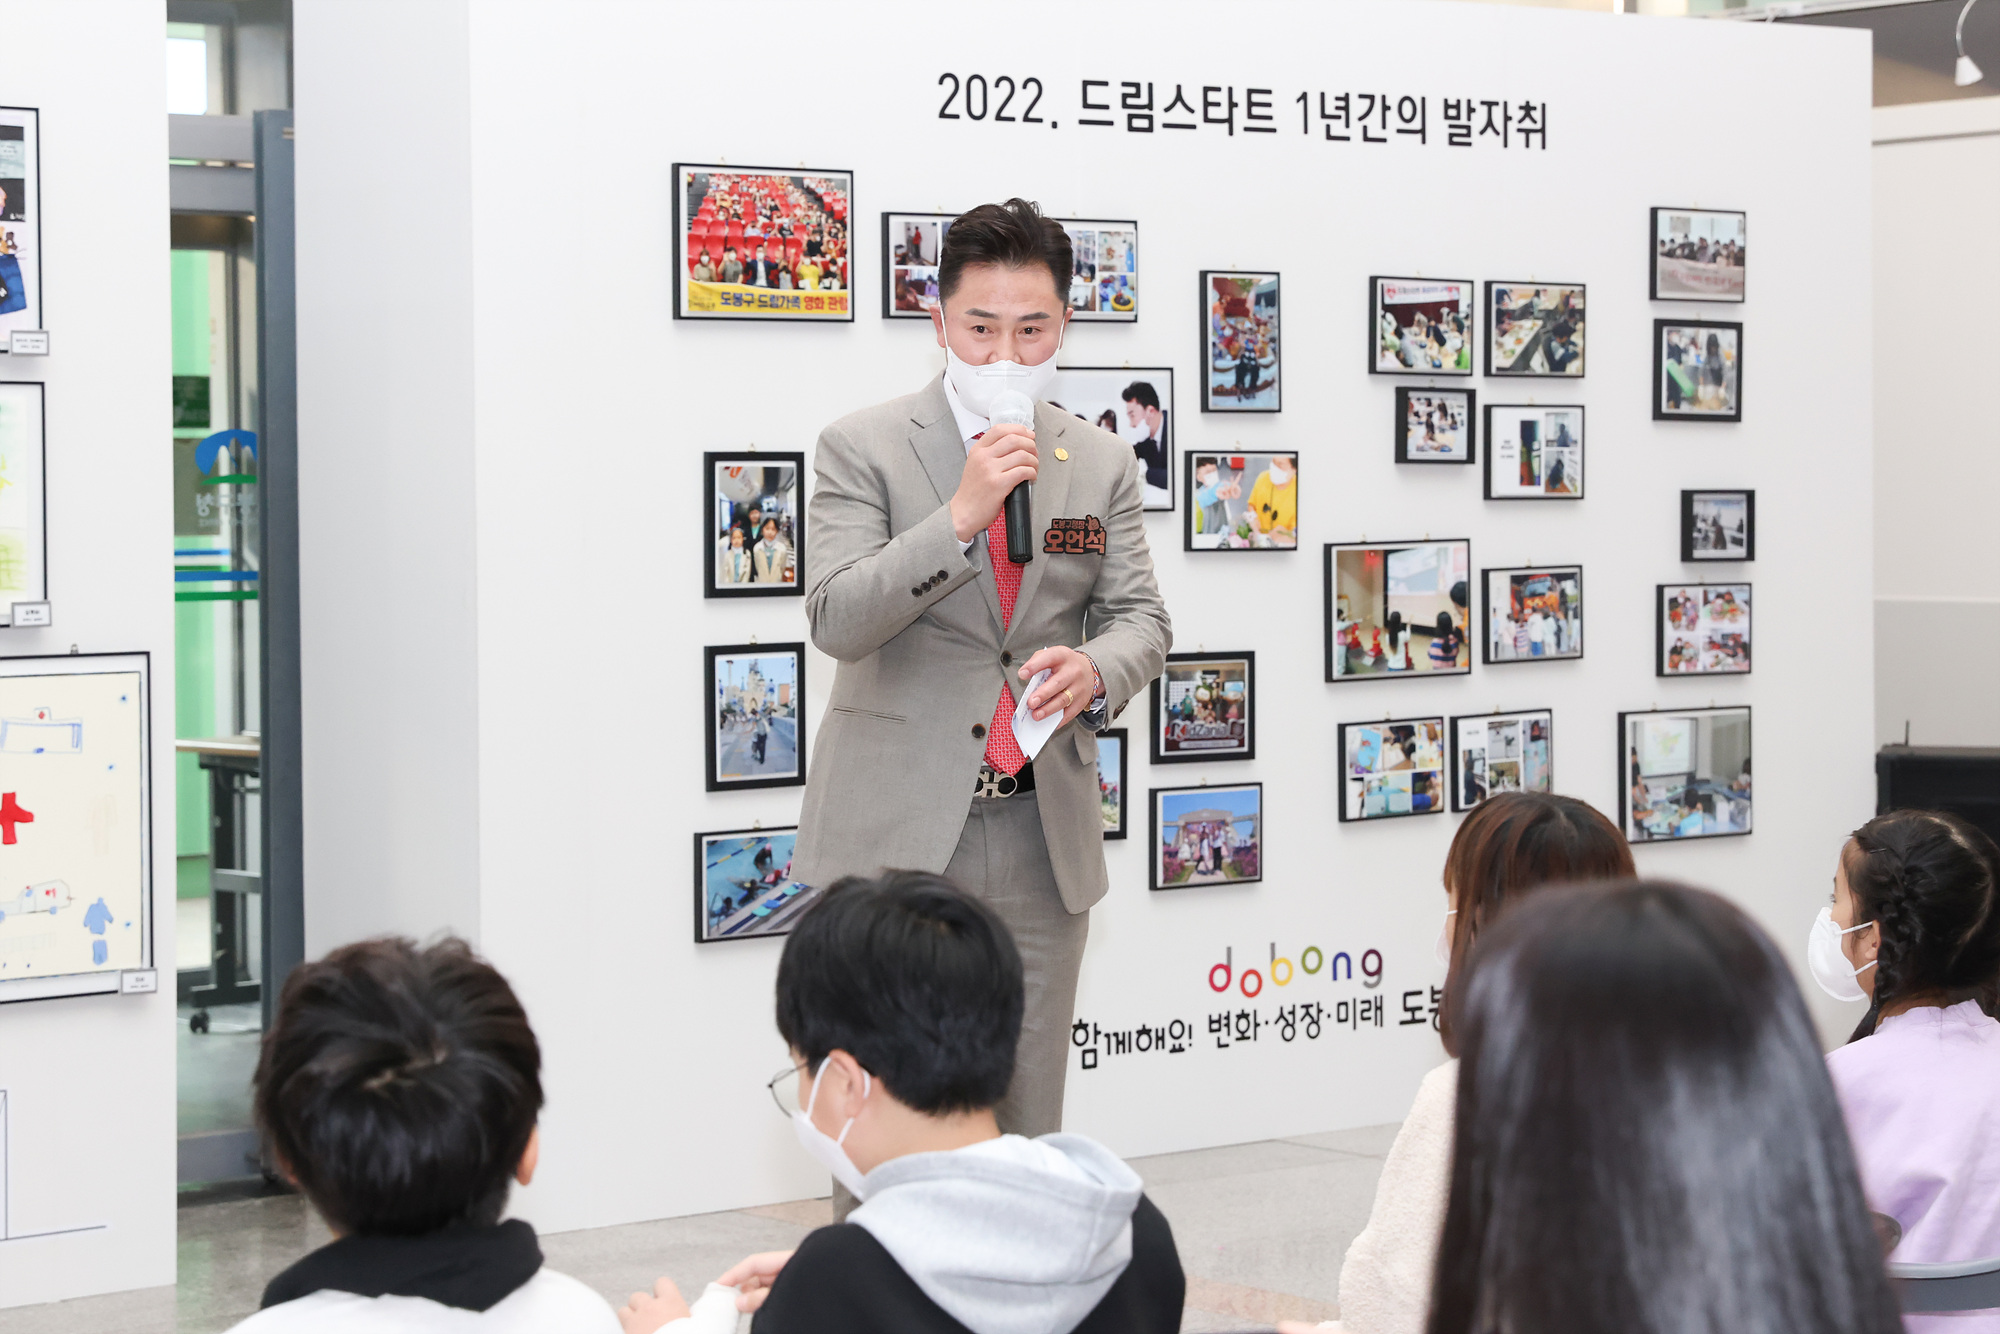 2022 <드림아이 꿈 이야기> 그림공모전 작품 전시회 해당 썸네일입니다